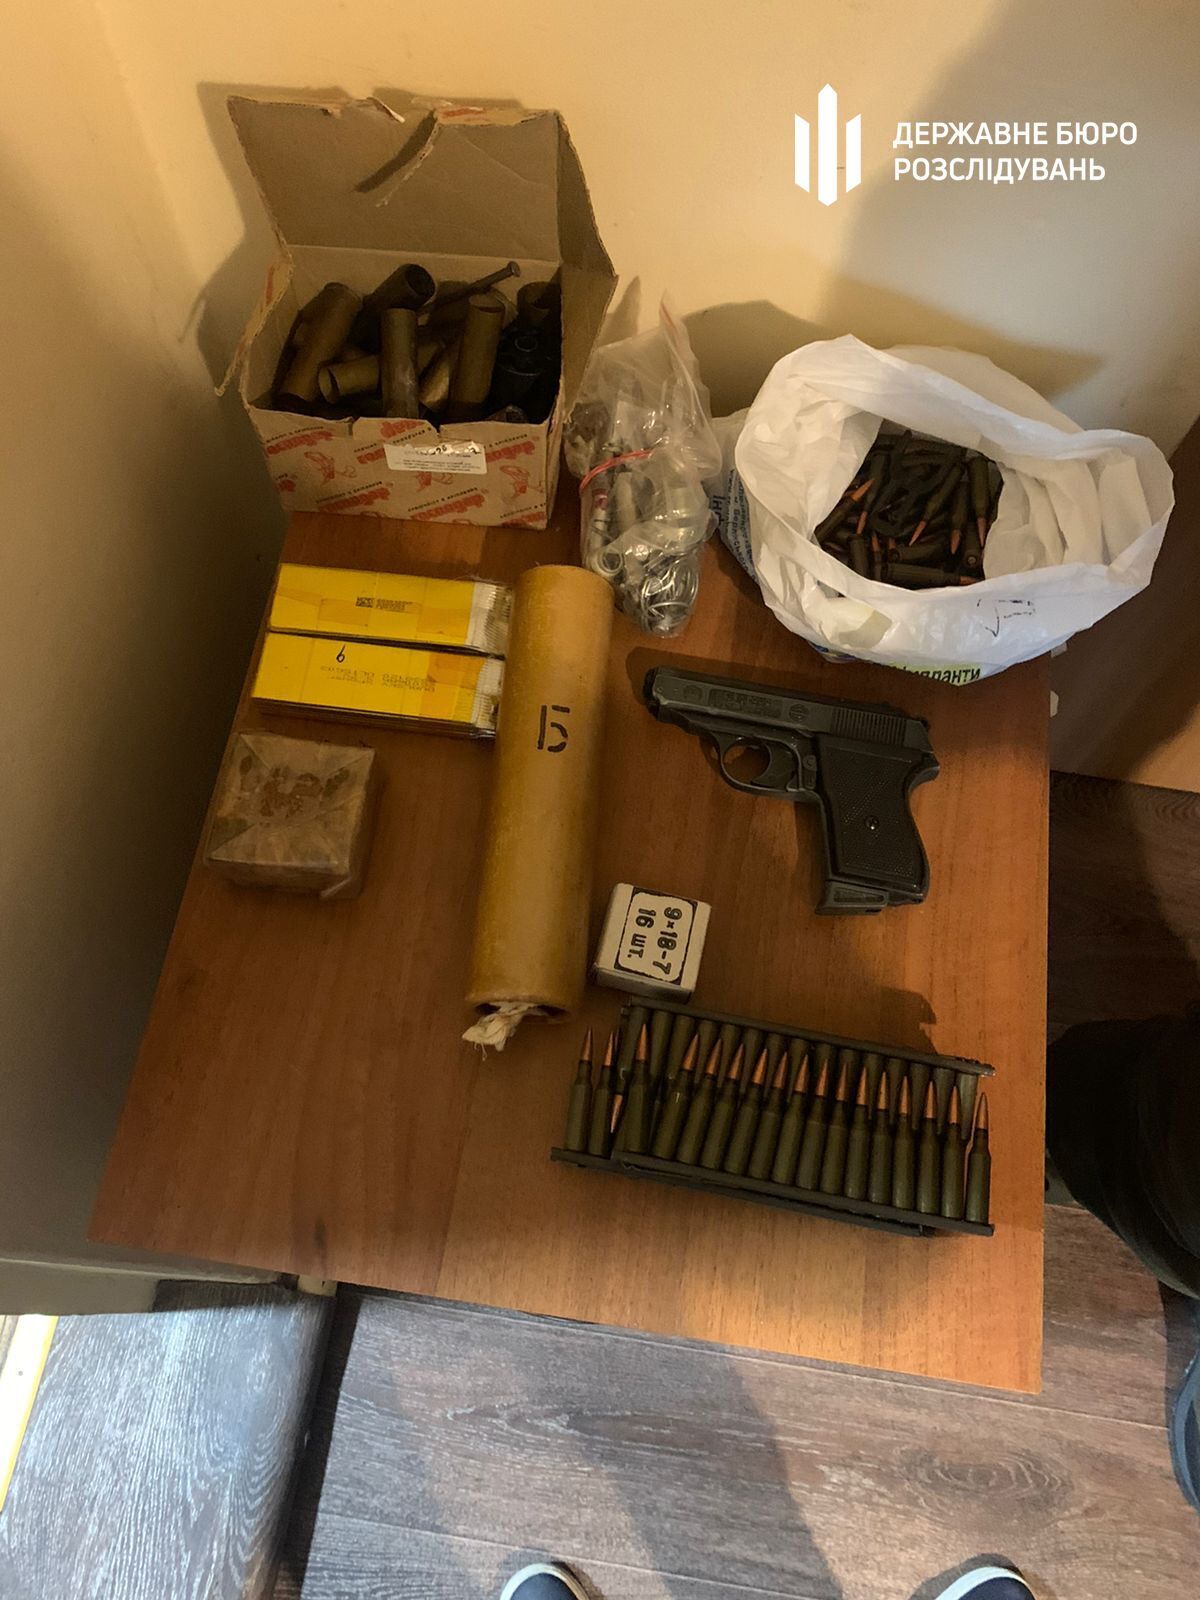 Оружие и патроны, обнаруженные при обыске в одной из компаний, подконтрольных Сивковичу